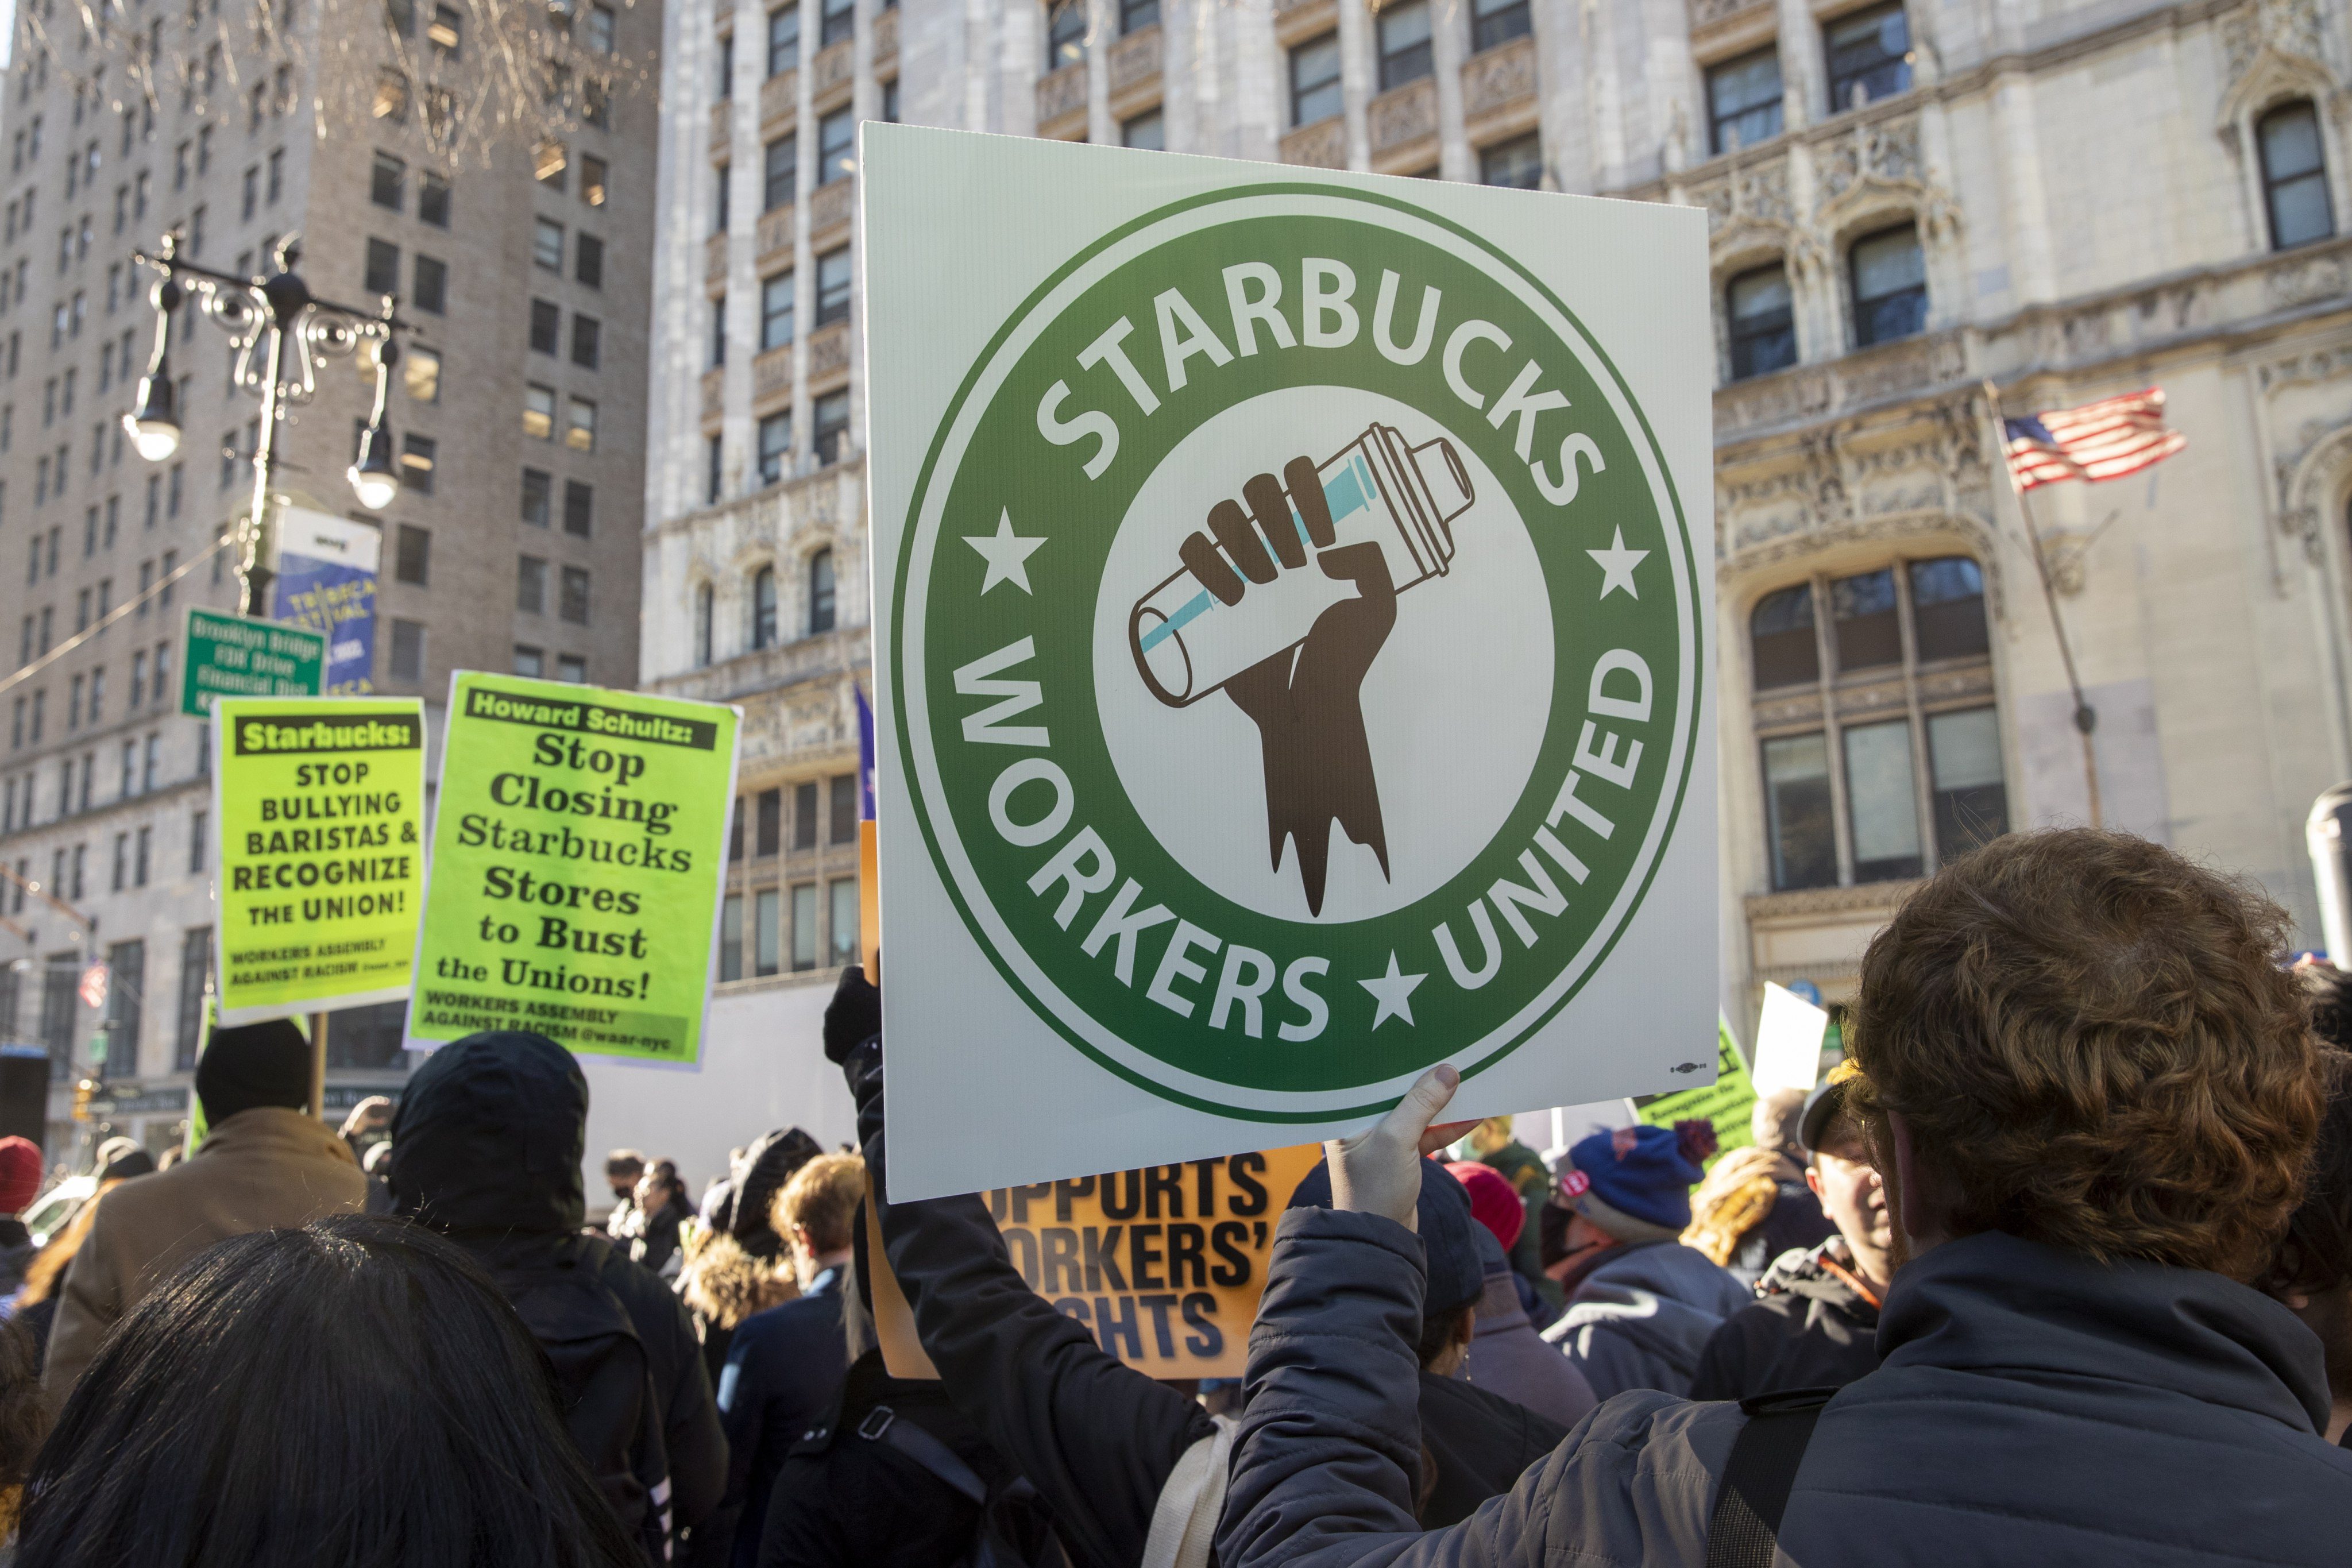 Миллиардеры – такие, как, например, бывший генеральный директор Starbucks Говард Шульц - любят утверждать, что мы должны быть благодарны им за все те рабочие места, которые они создают. Но сверхбогатые не создают рабочих мест в каком-либо значимом для общества смысле — они просто пожинают плоды владения активами и труда своих работников